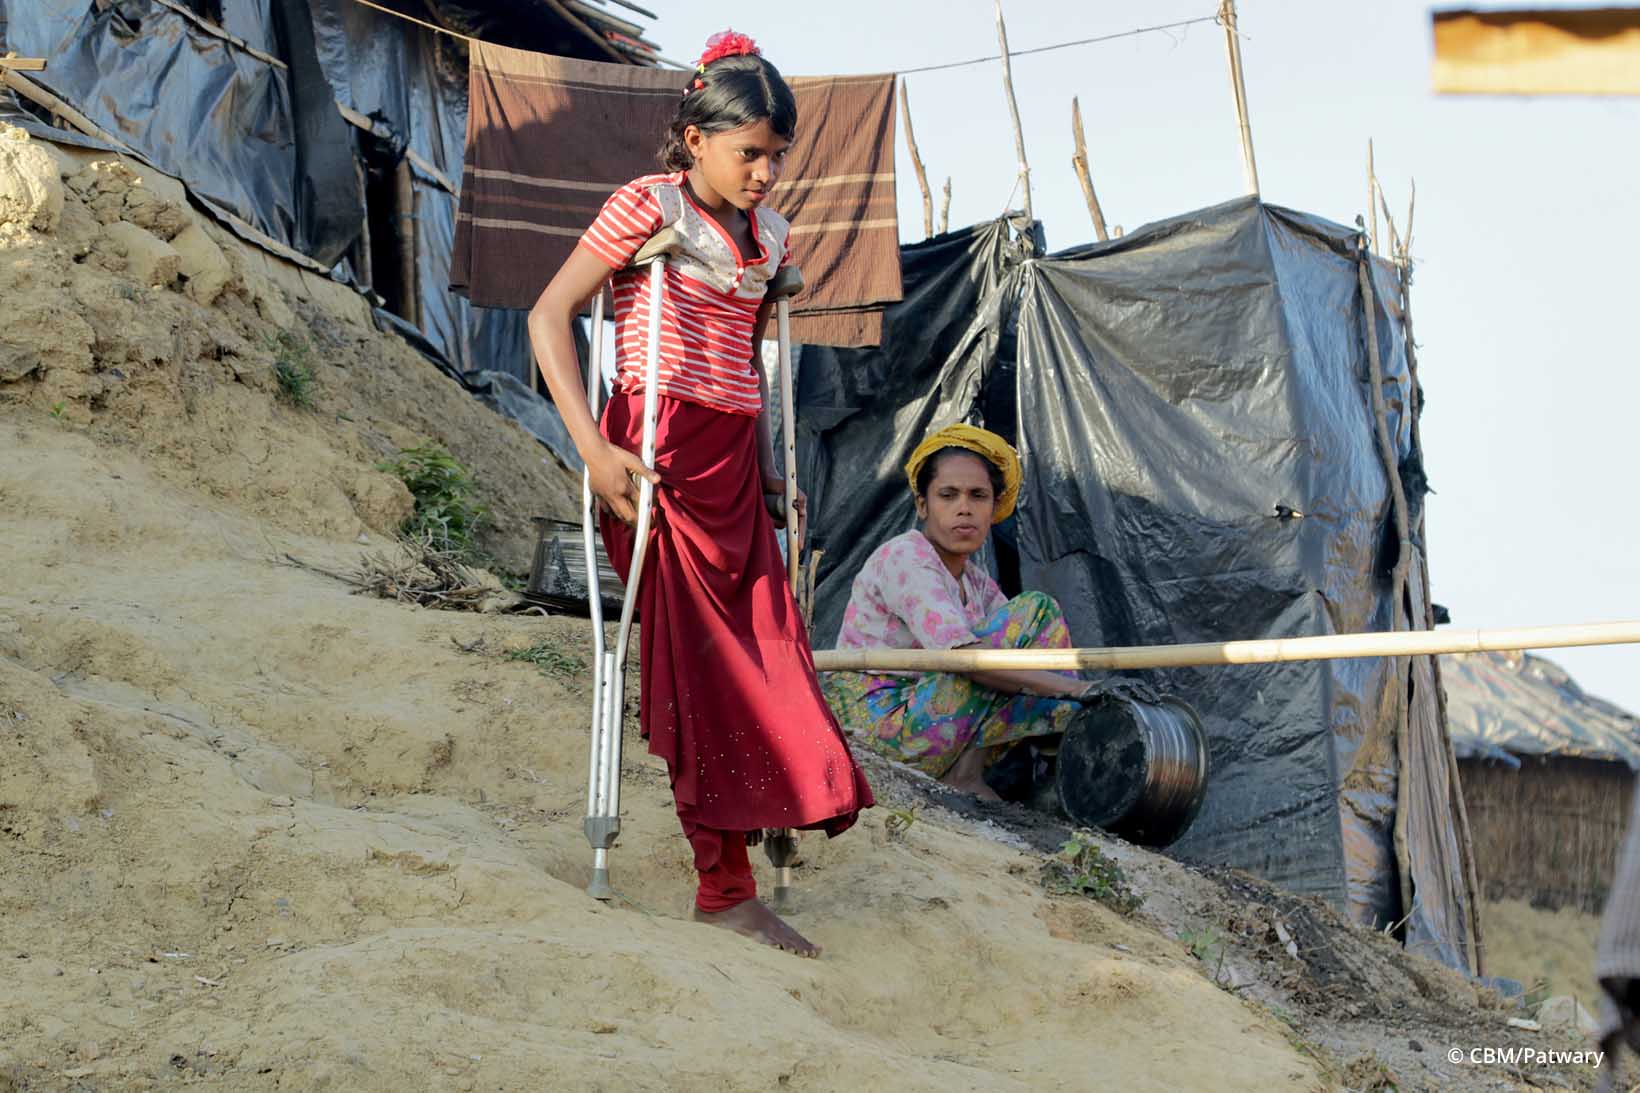 Une jeune fille Rohingya descend prudemment avec l’aide de béquilles un escalier construit dans la terre argileuse.